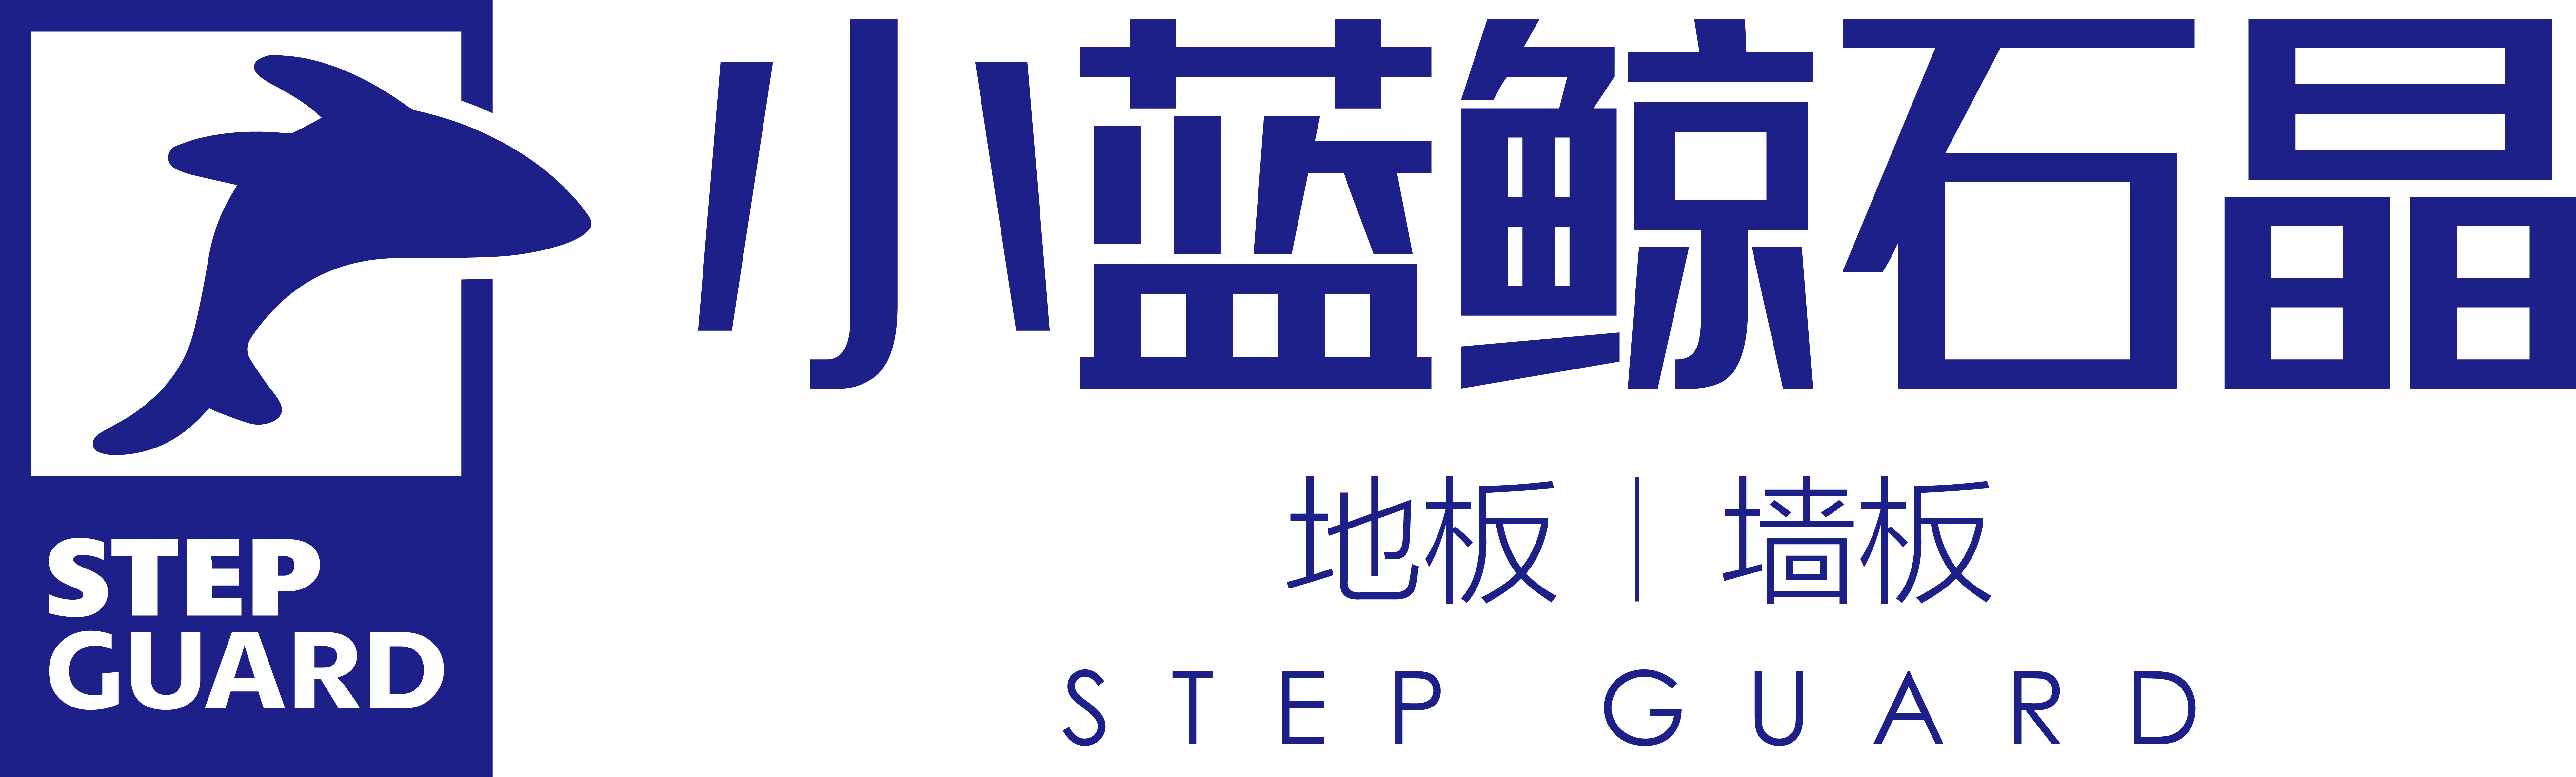 小蓝鲸石晶logo